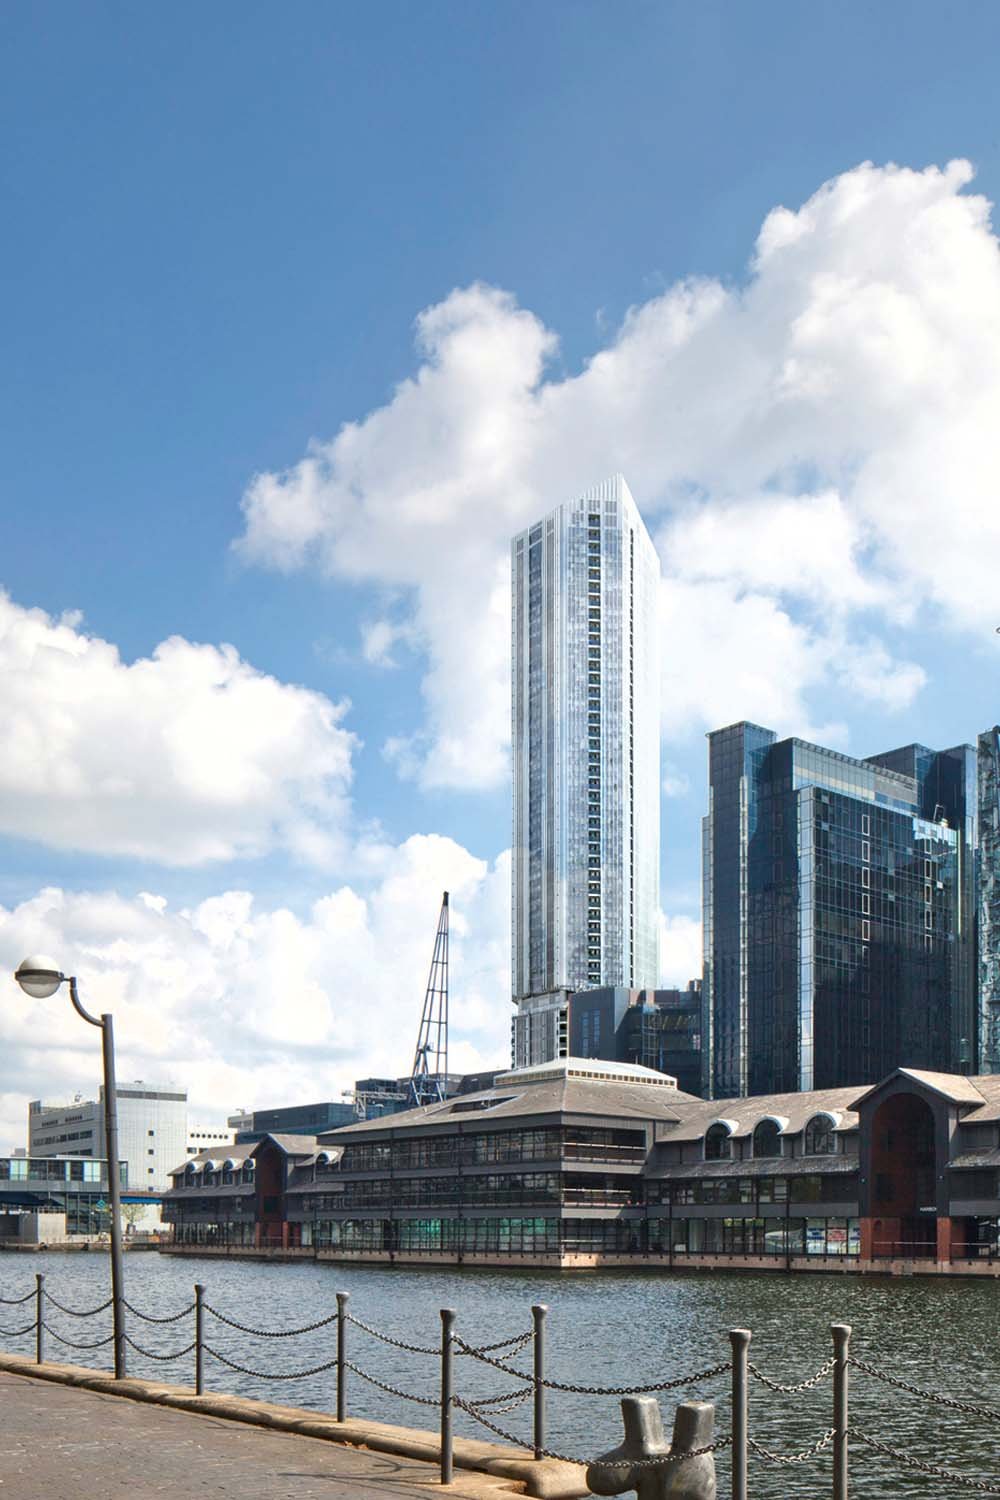 Ein Zeichen des Wandels: War Canary Wharf bislang als reiner Bürostandort bekannt, wird das Gebiet im Osten immer mehr zum Wohnort umfunktioniert. Leuchtendes Beispiel ist das 53-stöckige »The Madison«. Preise: ab 600.000 Euro aufwärts.
themadison.co.uk